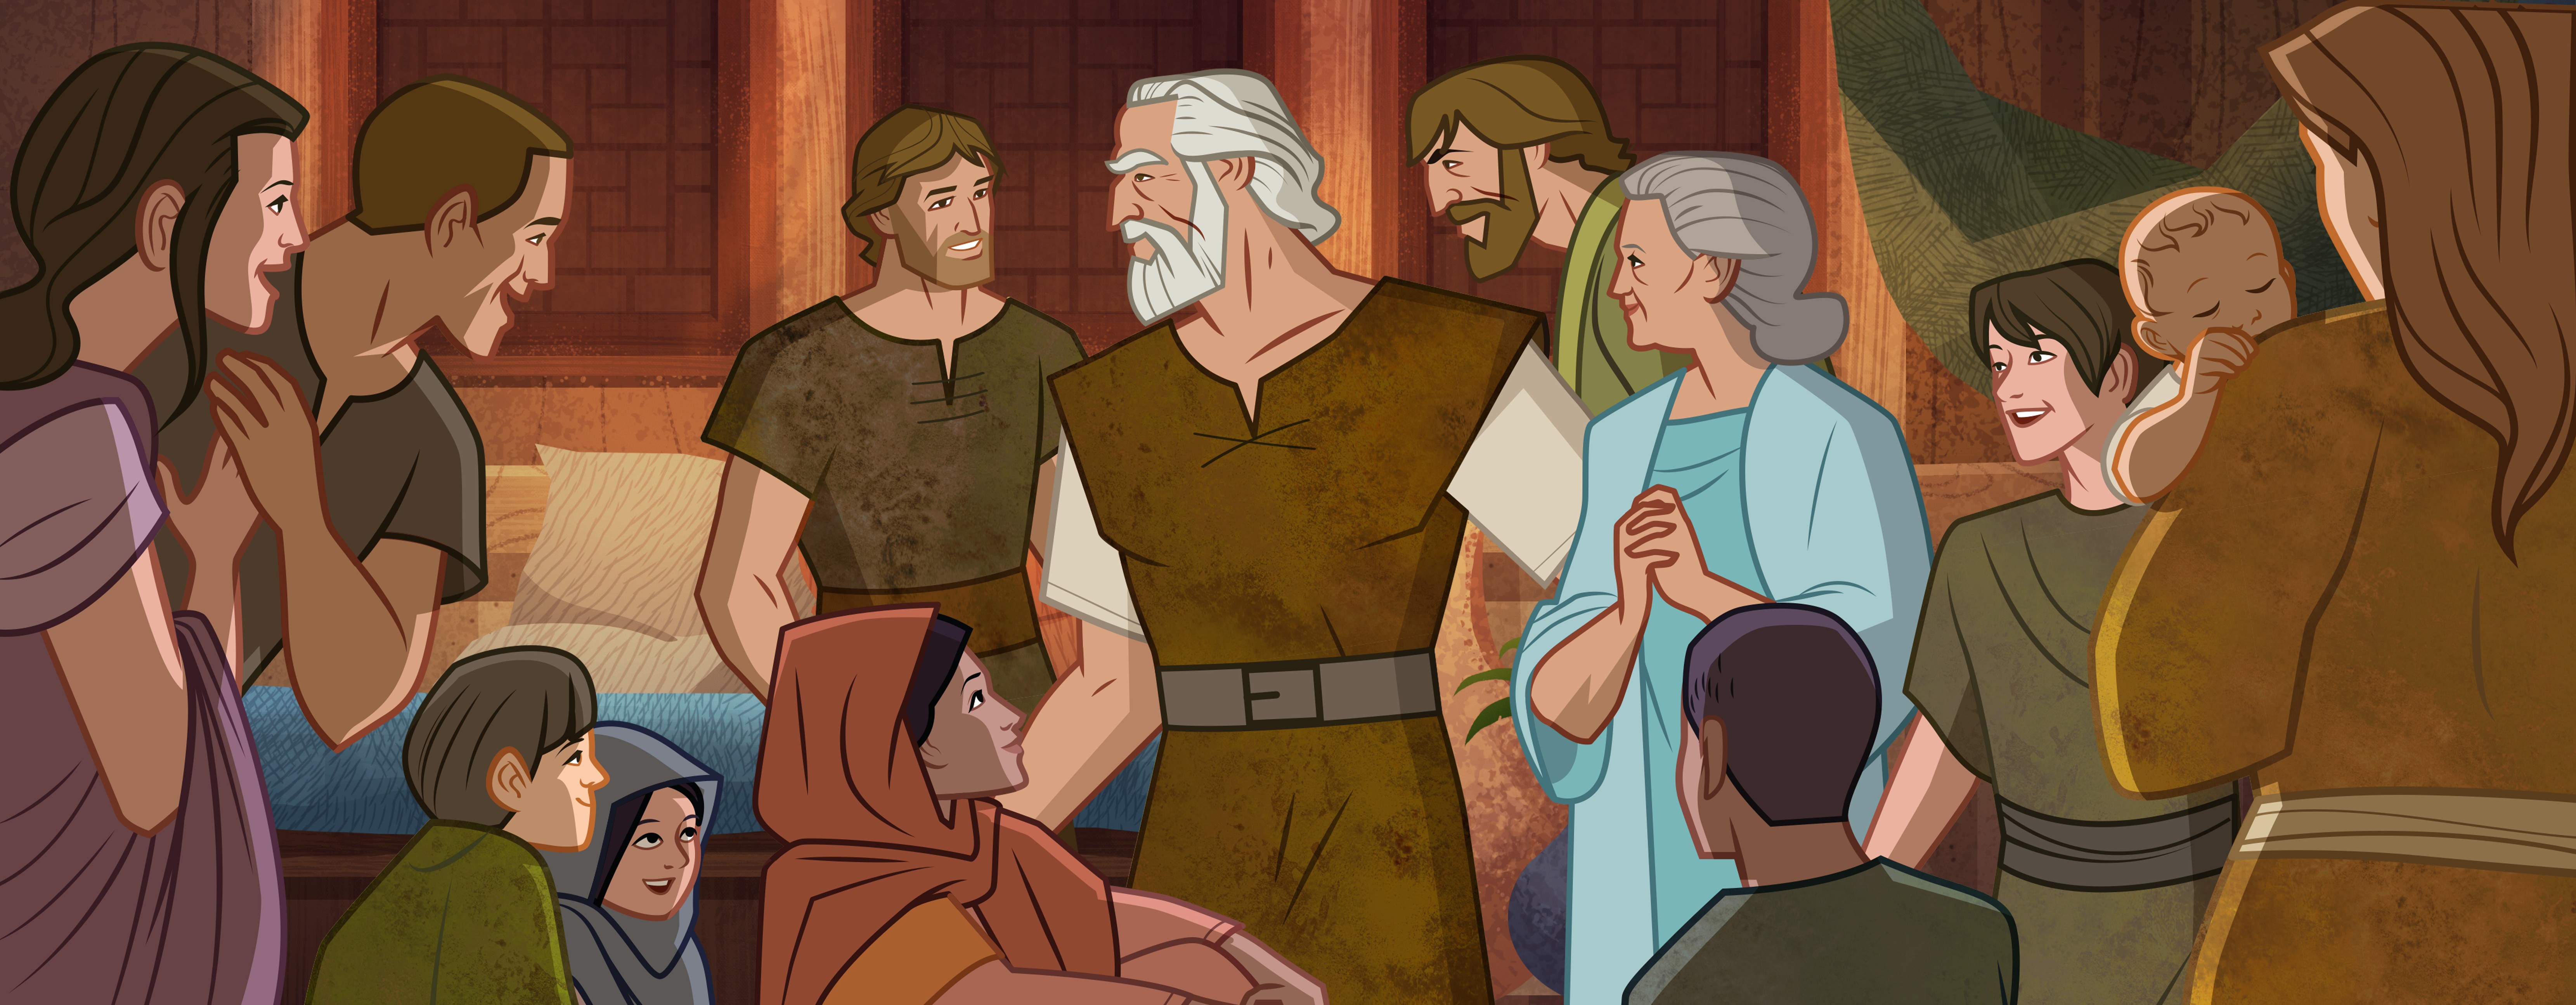 Noah And His Family Cartoon